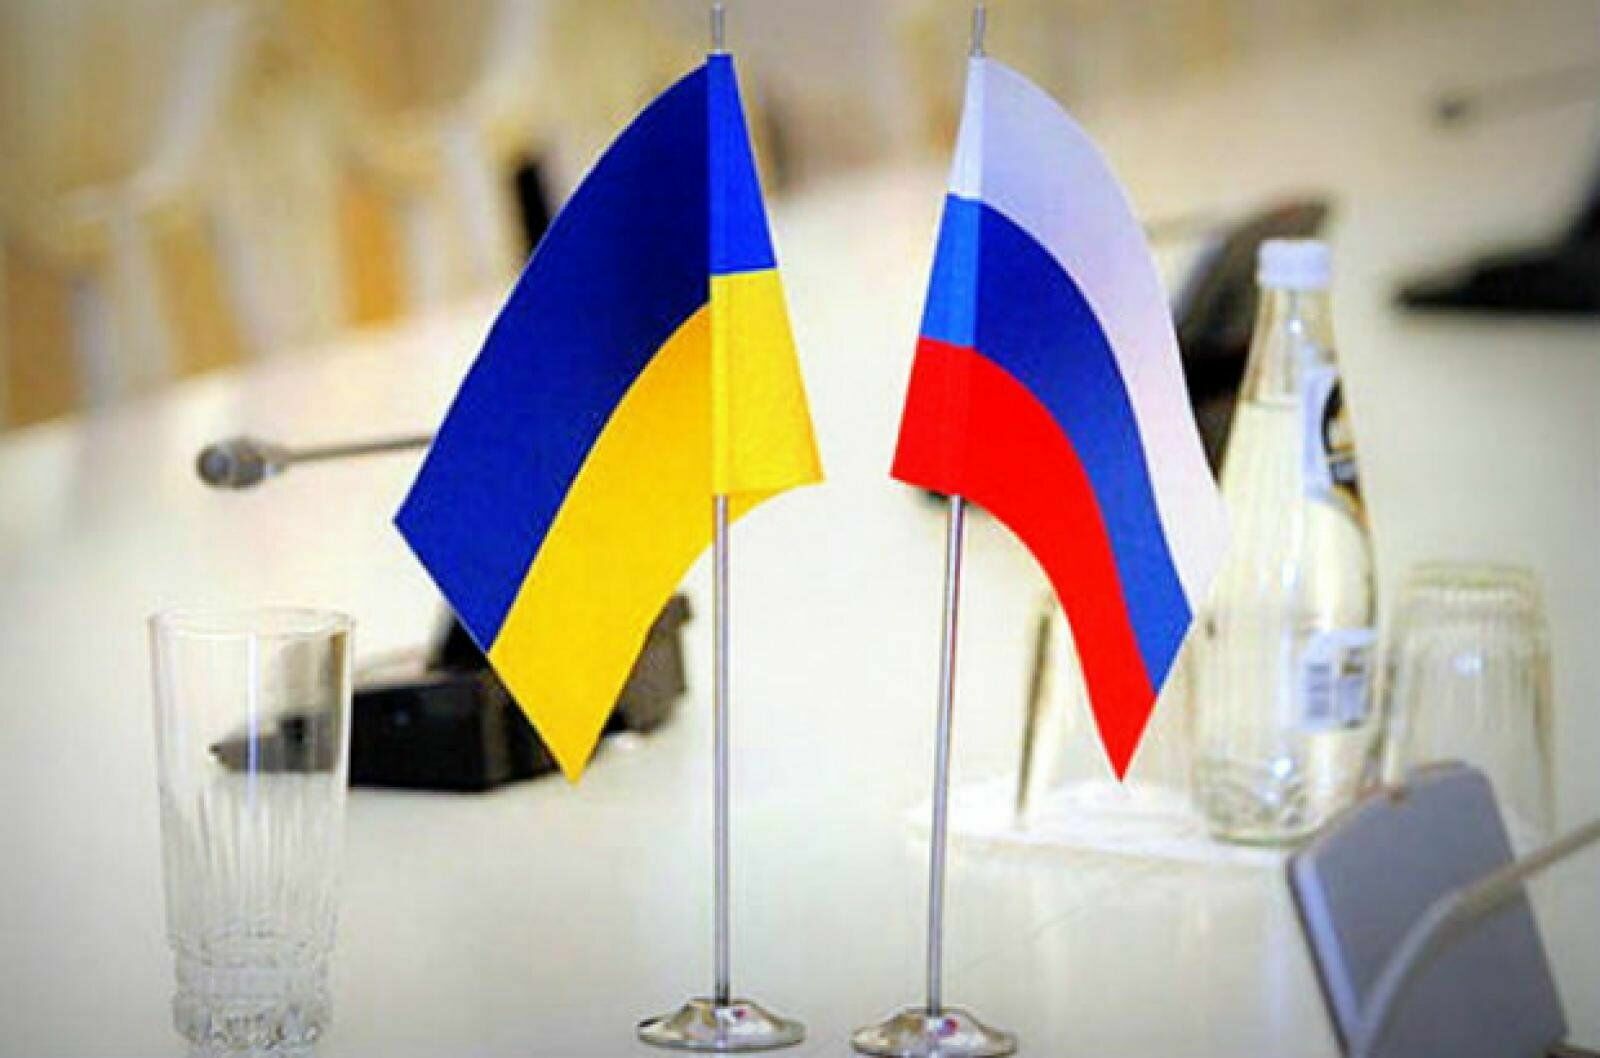 Переговоры завершены: делегации возвращаются в Россию и Украину для консультаций